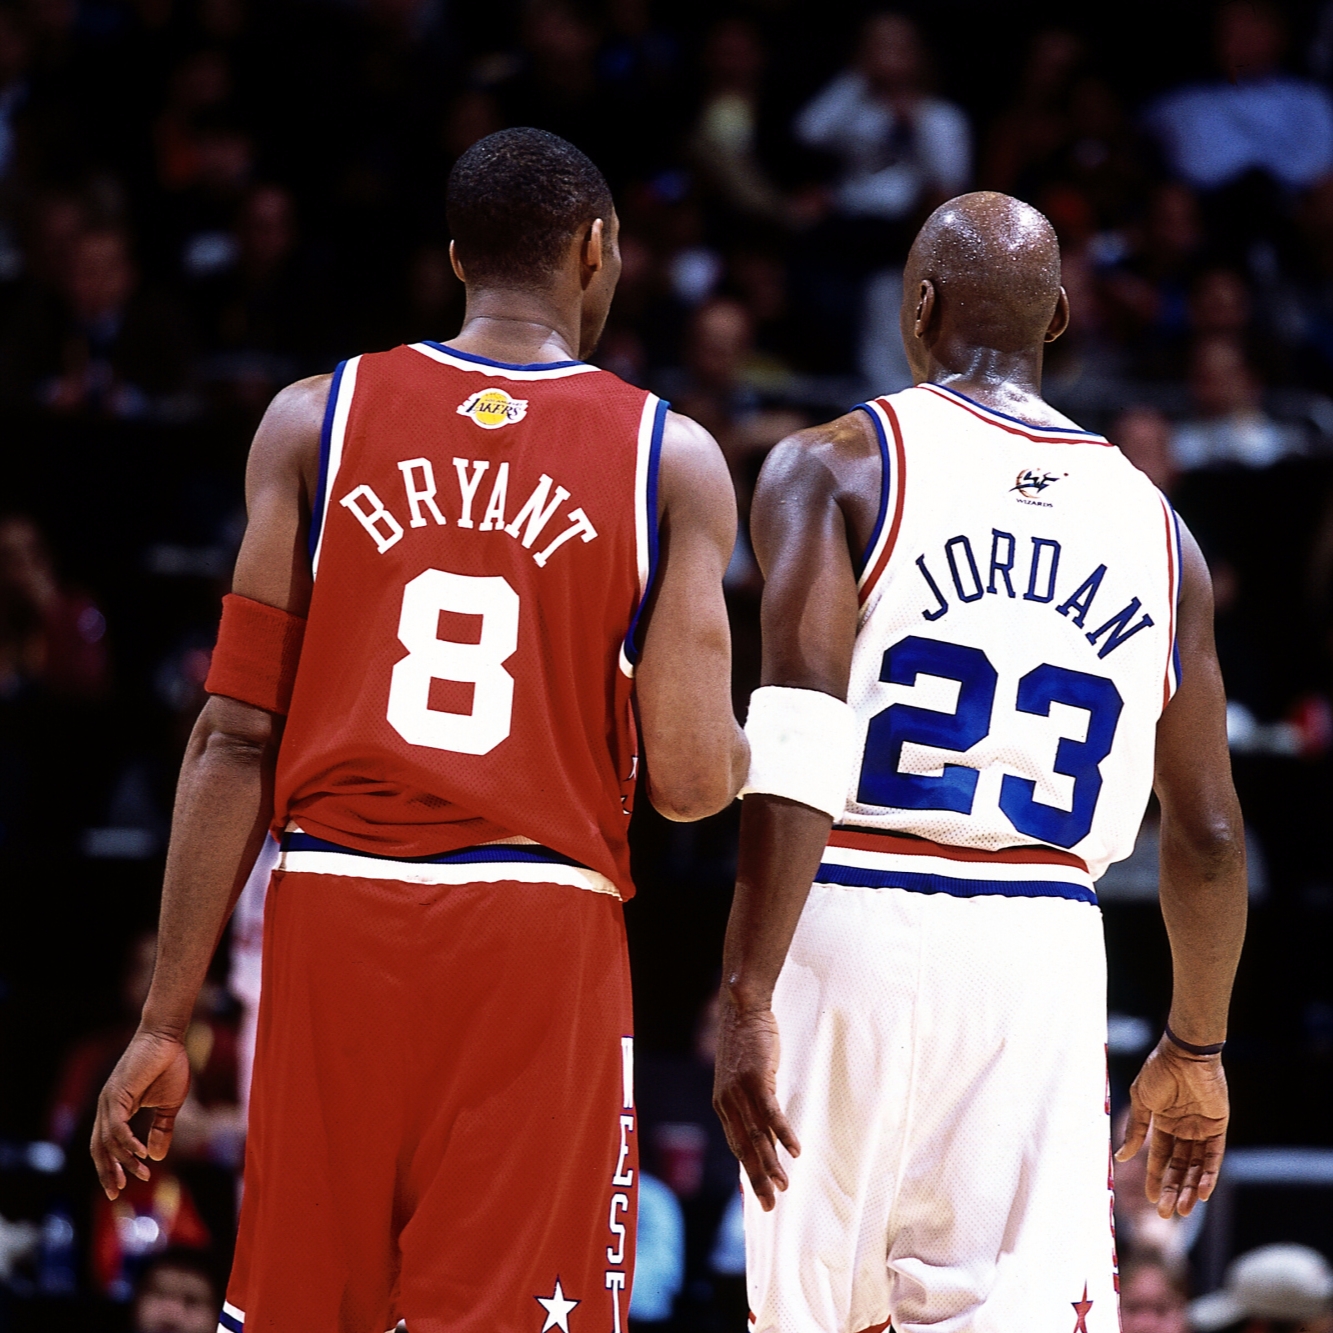 〔乂抗對決〕Jordan 與 Kobe 的 10 個差異處！執教過兩位的傳奇教頭 Phil Jackson 告訴你